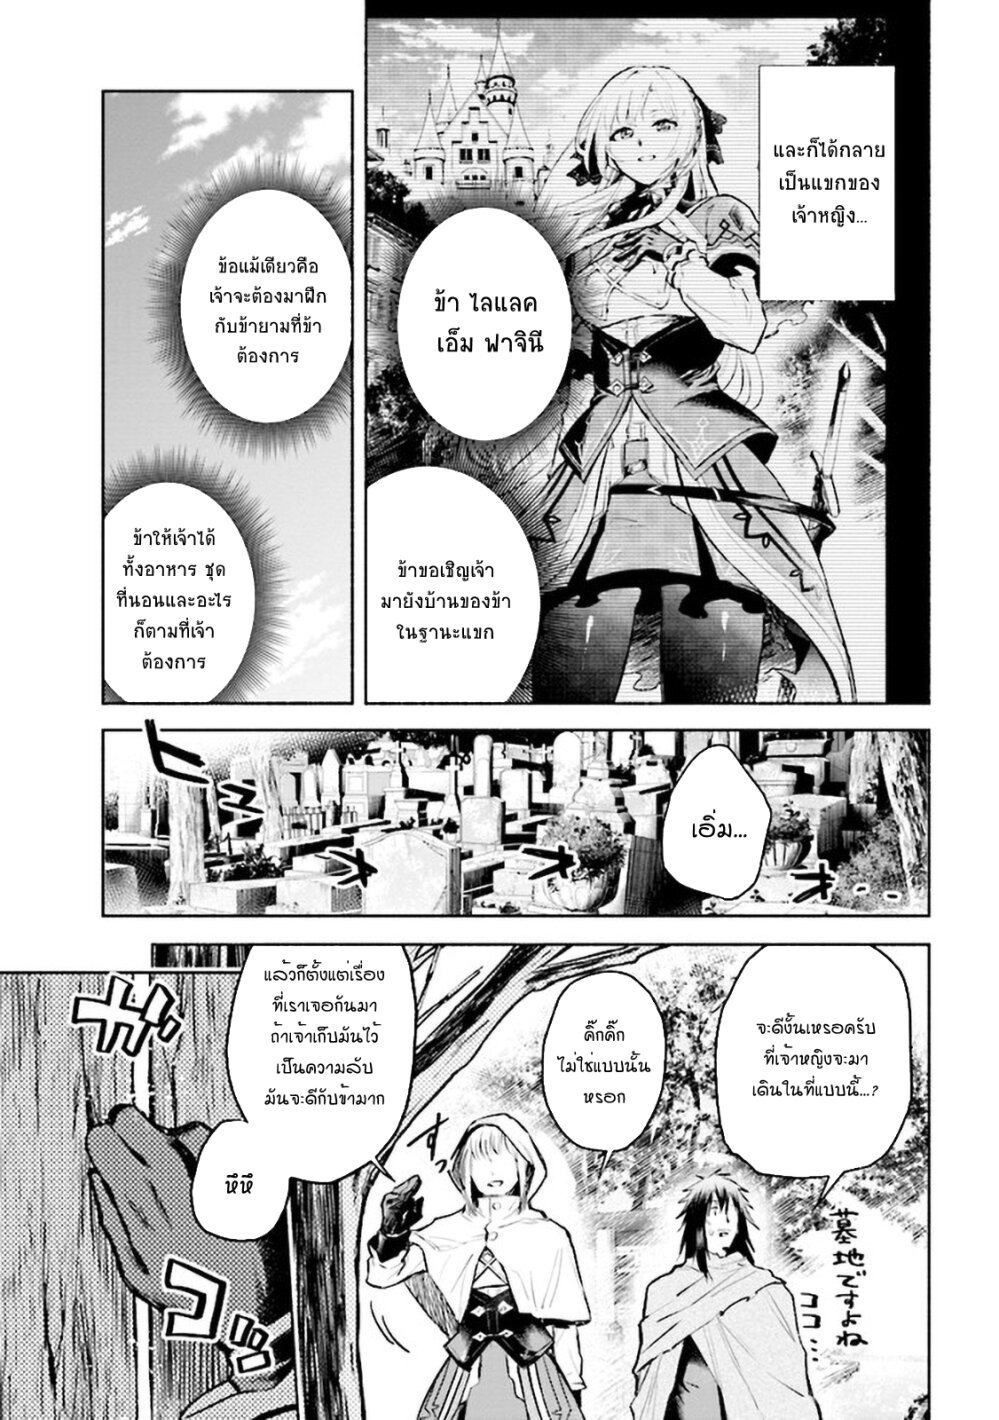 kuro-manga-com-11.jpg